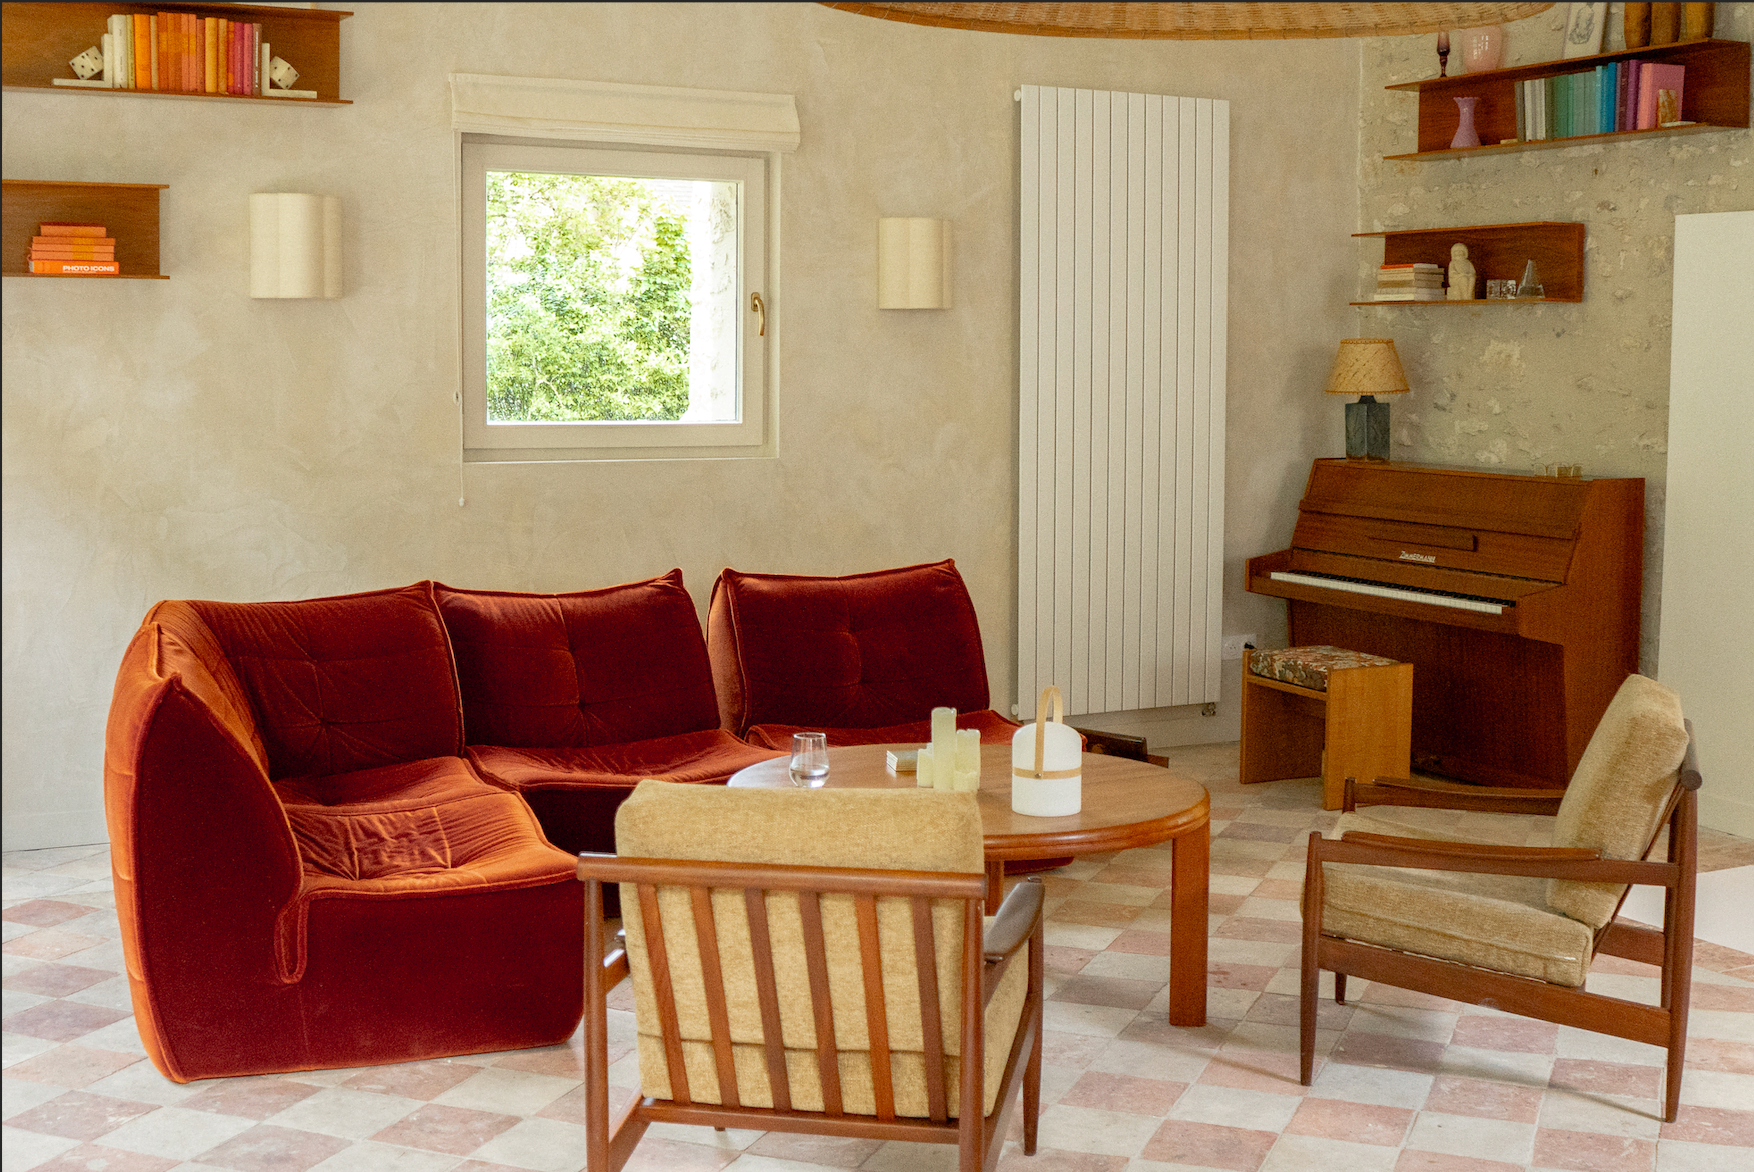 Le salon de La Source : fauteuils en bois et canapés rouges